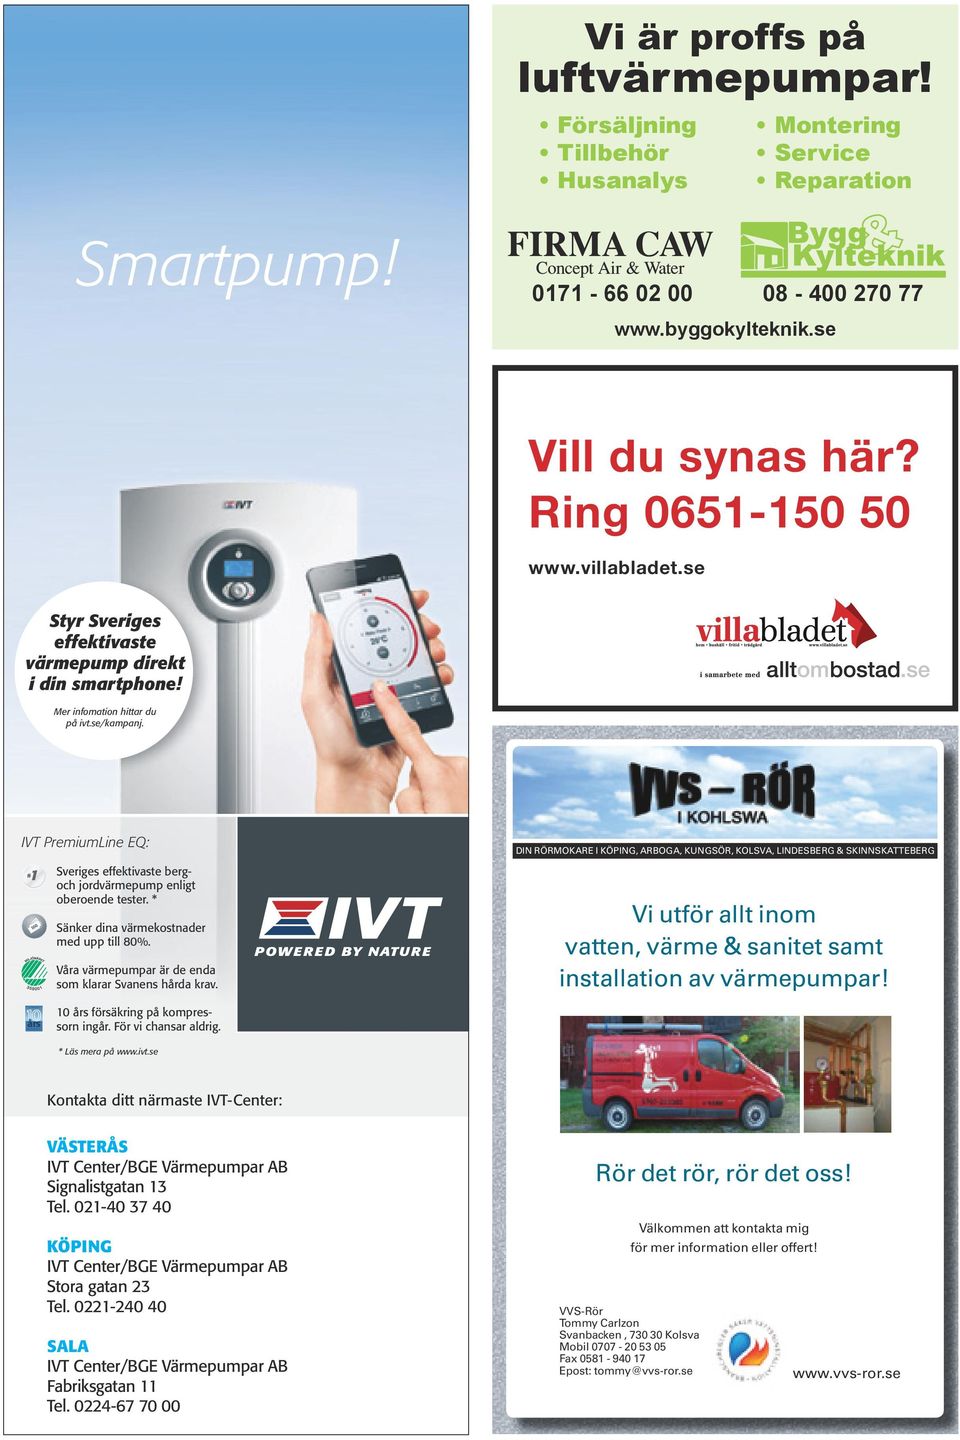 Styr Sveriges effektivaste värmepump direkt i din smartphone! Så bjuder vi på app och mottagare så att du enkelt kan styra den med din smartphone (värde 3900:- inkl. moms).